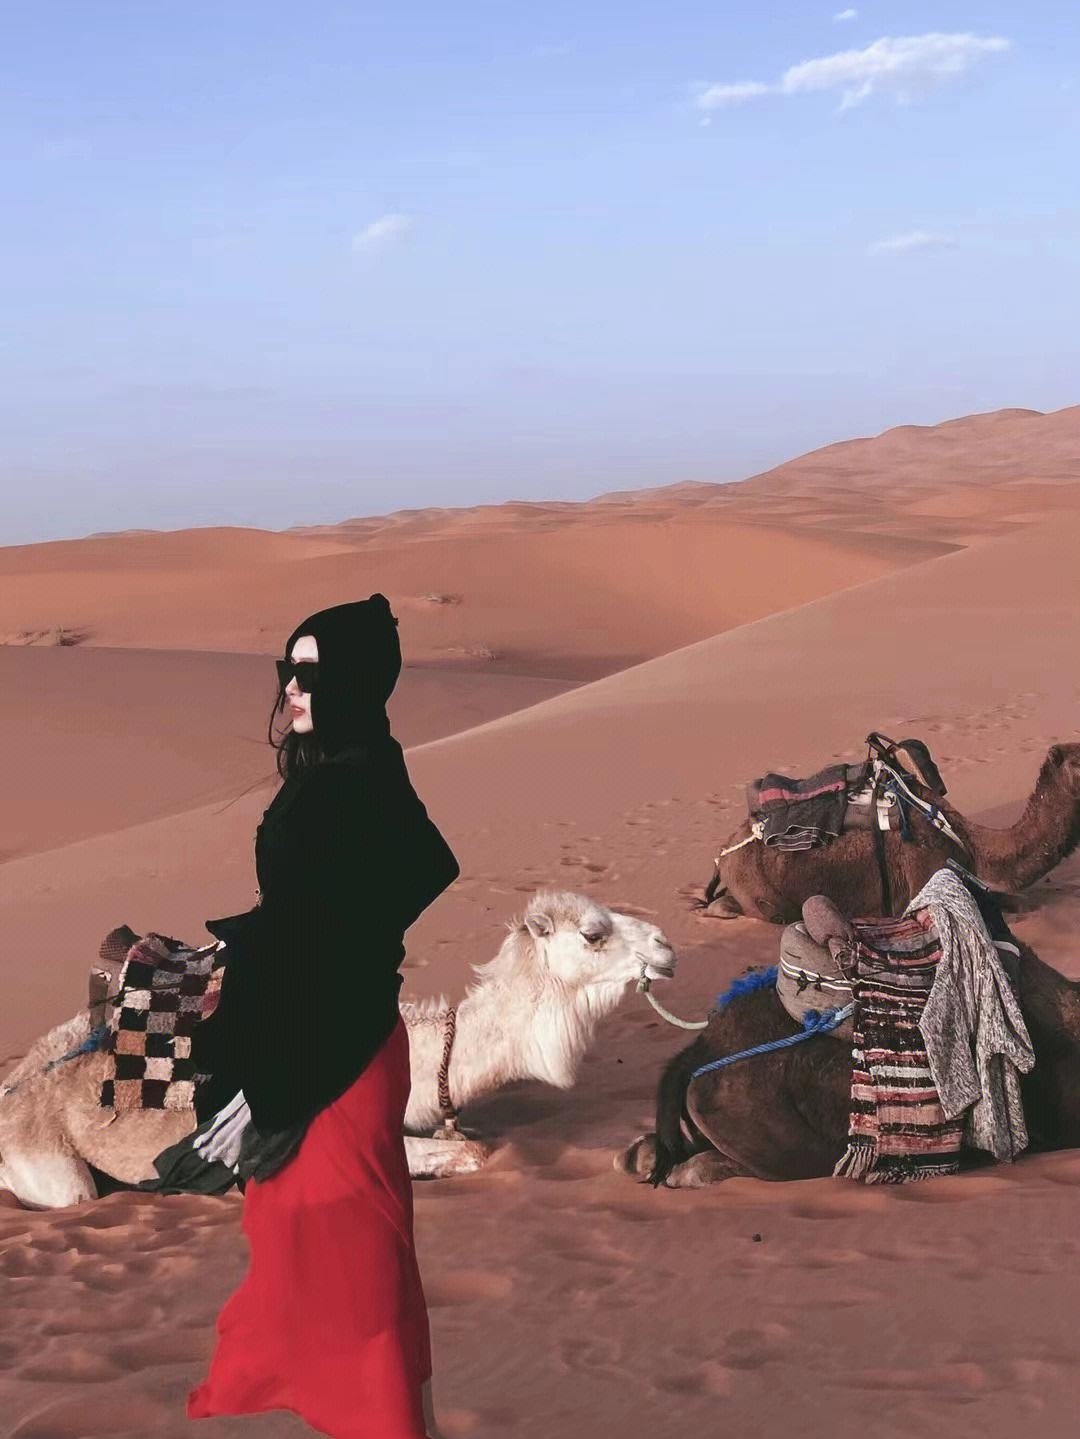 沙漠之王:摩洛哥撒哈拉沙漠